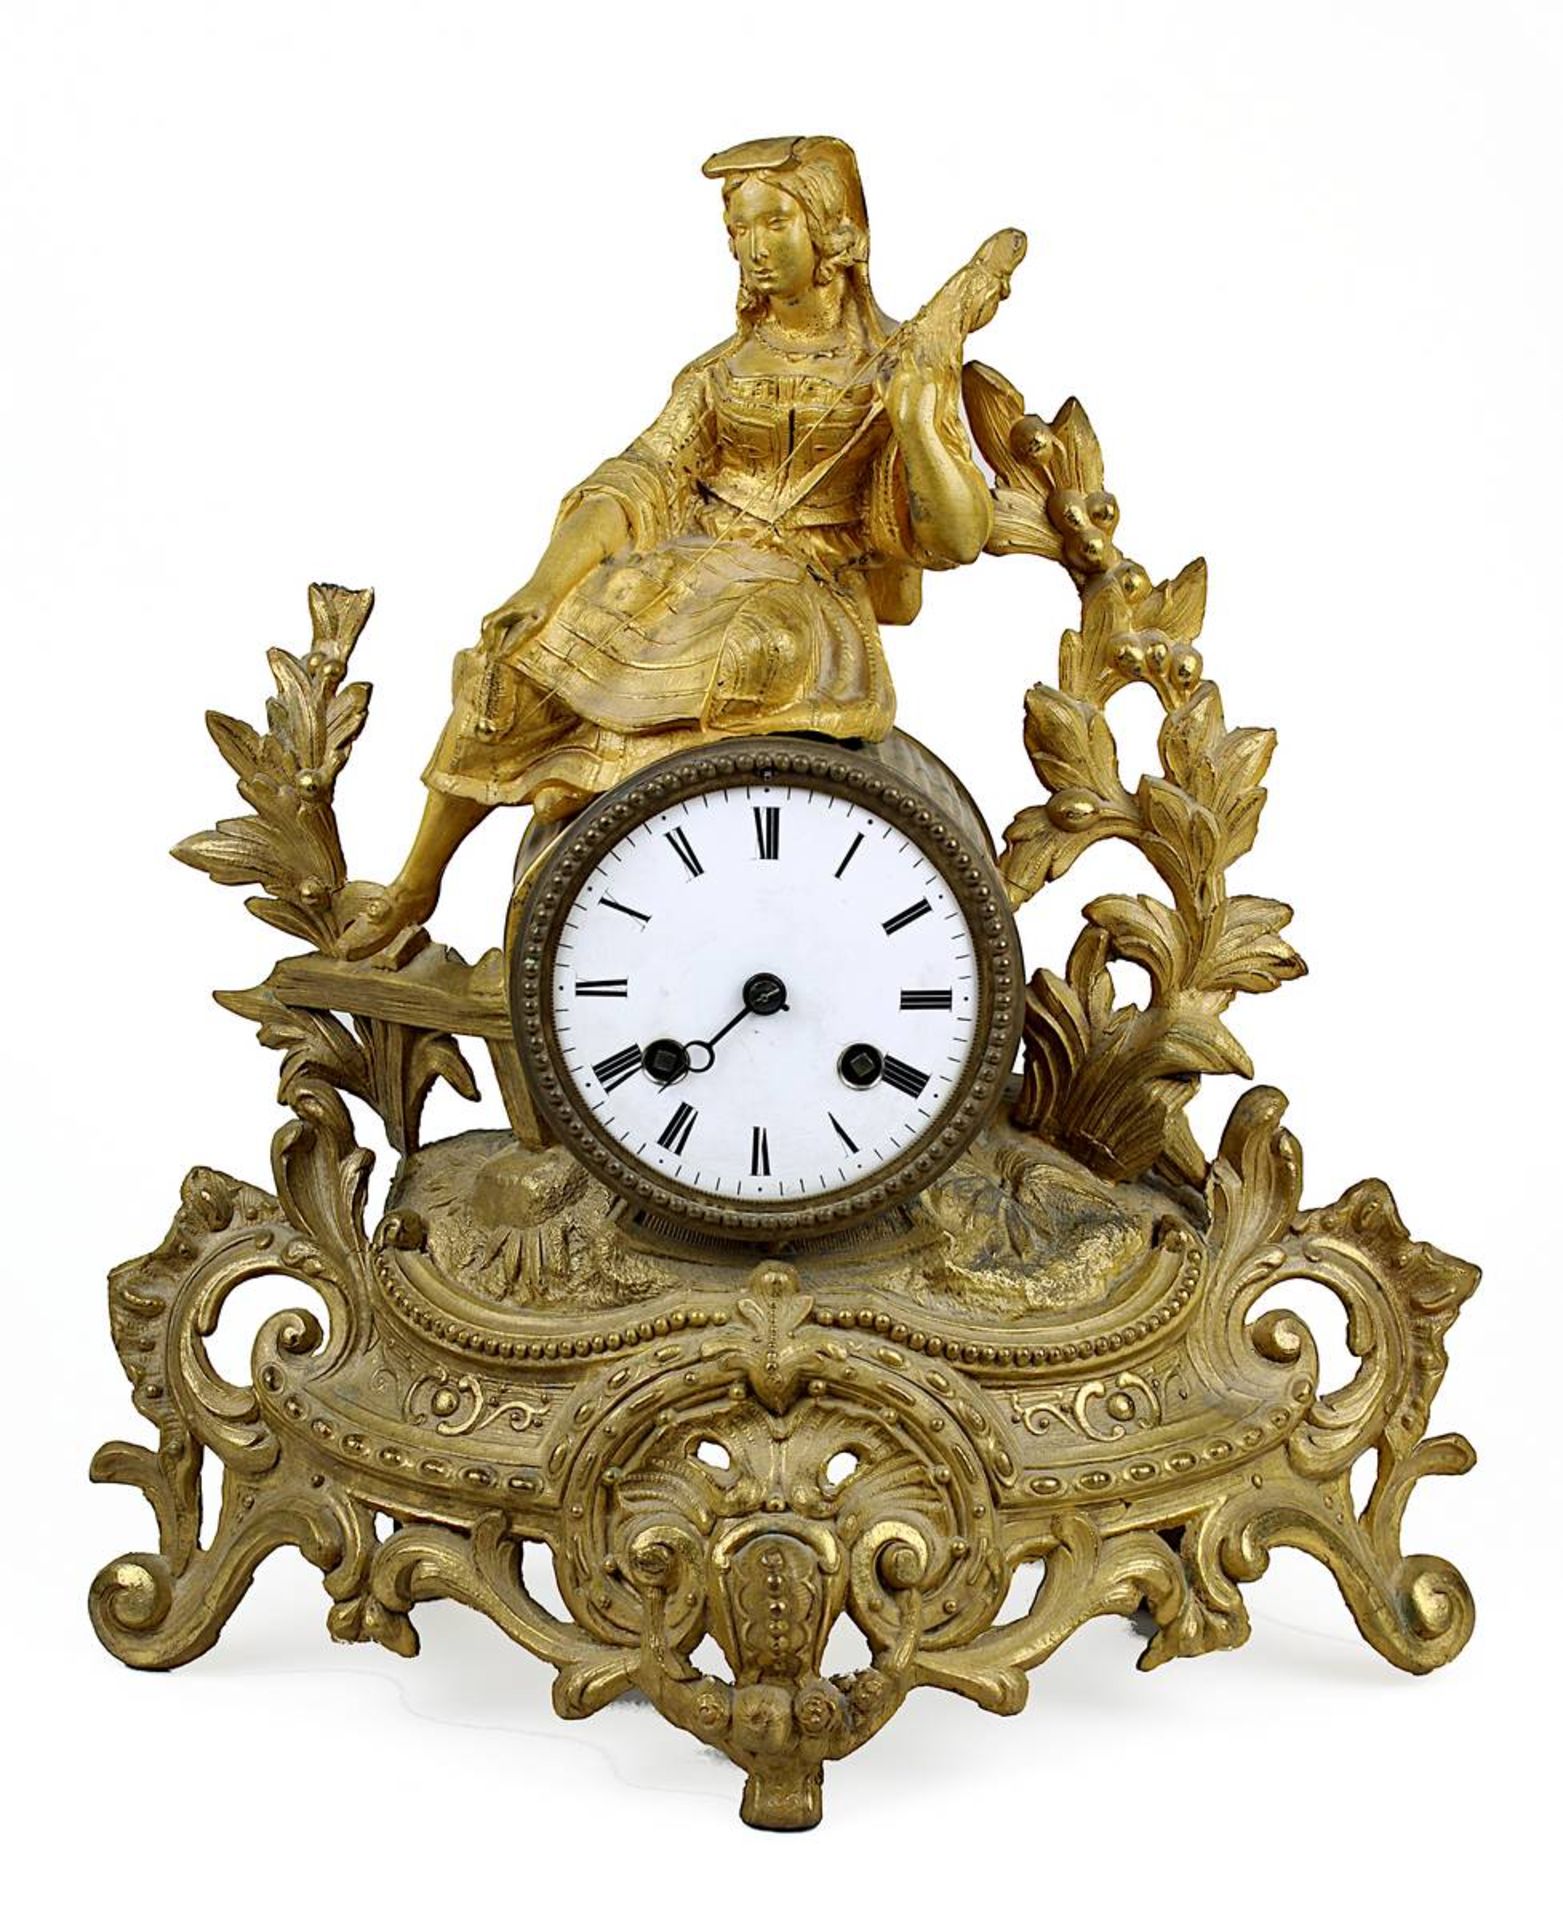 Pendule, Frankreich um 1860/80, Regule vergoldet, im opulentem Barockstil, auf Uhrengehäuse